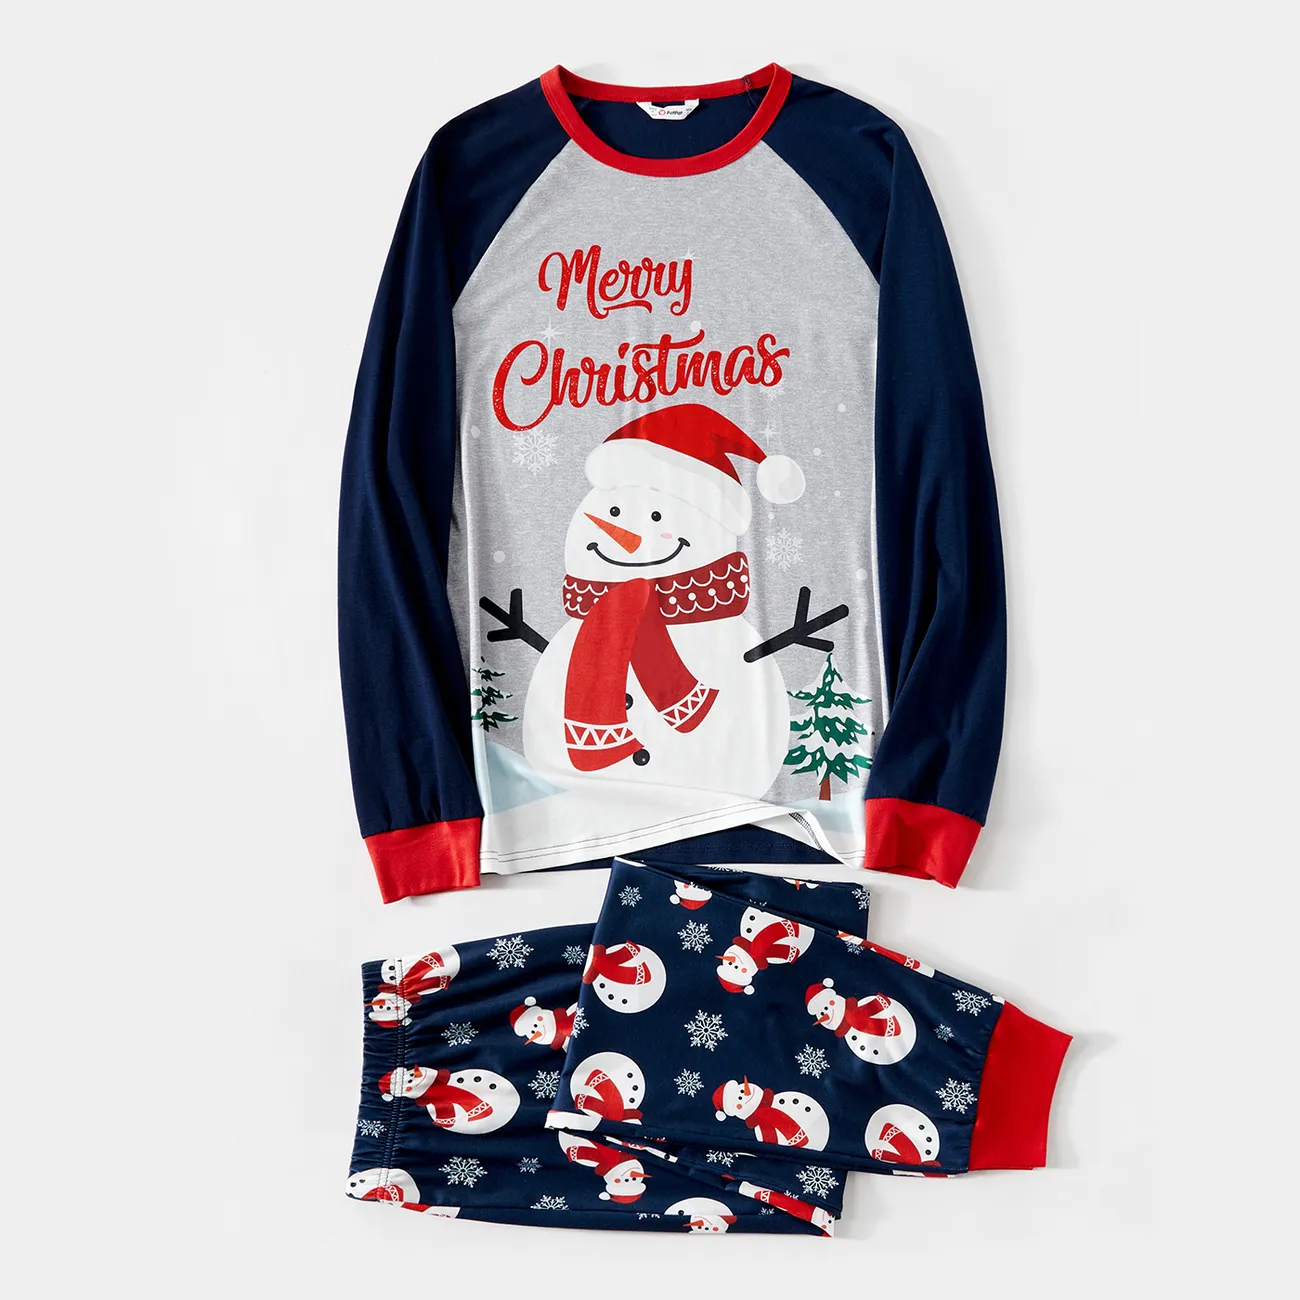 Noël Look Familial Manches longues Tenues de famille assorties Pyjamas (Flame Resistant) bloc de couleur big image 1